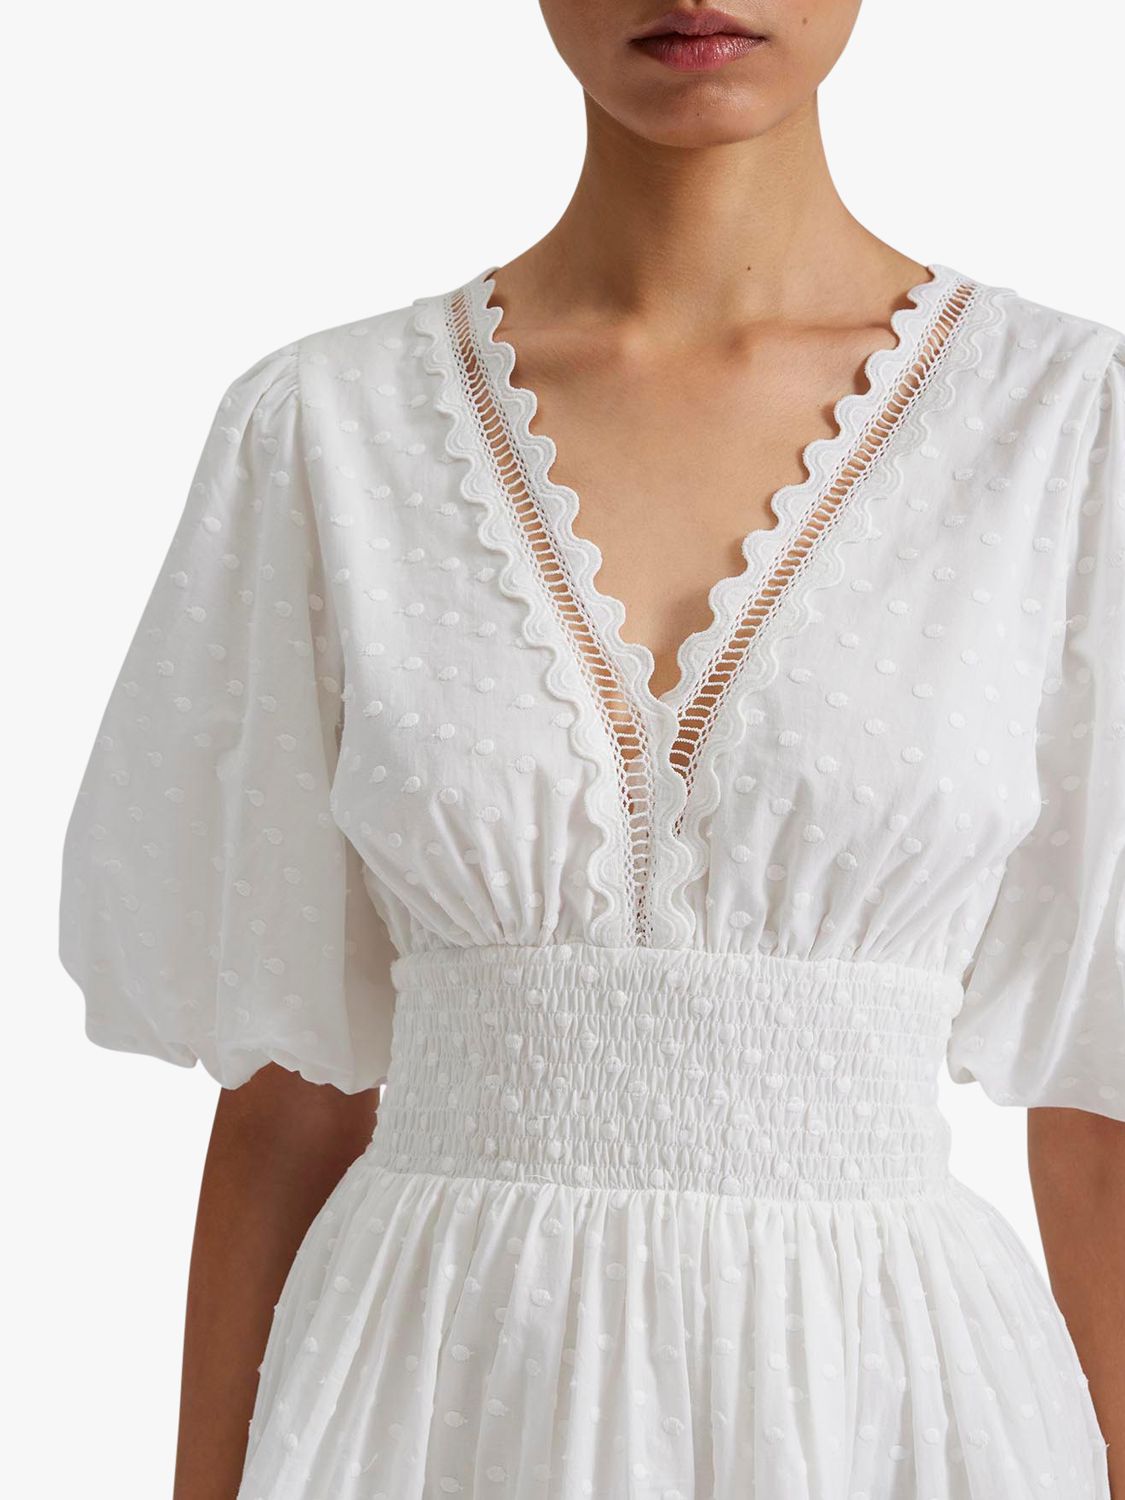 Malina Elvira Cotton Dobby Spot Mini Dress, White, S